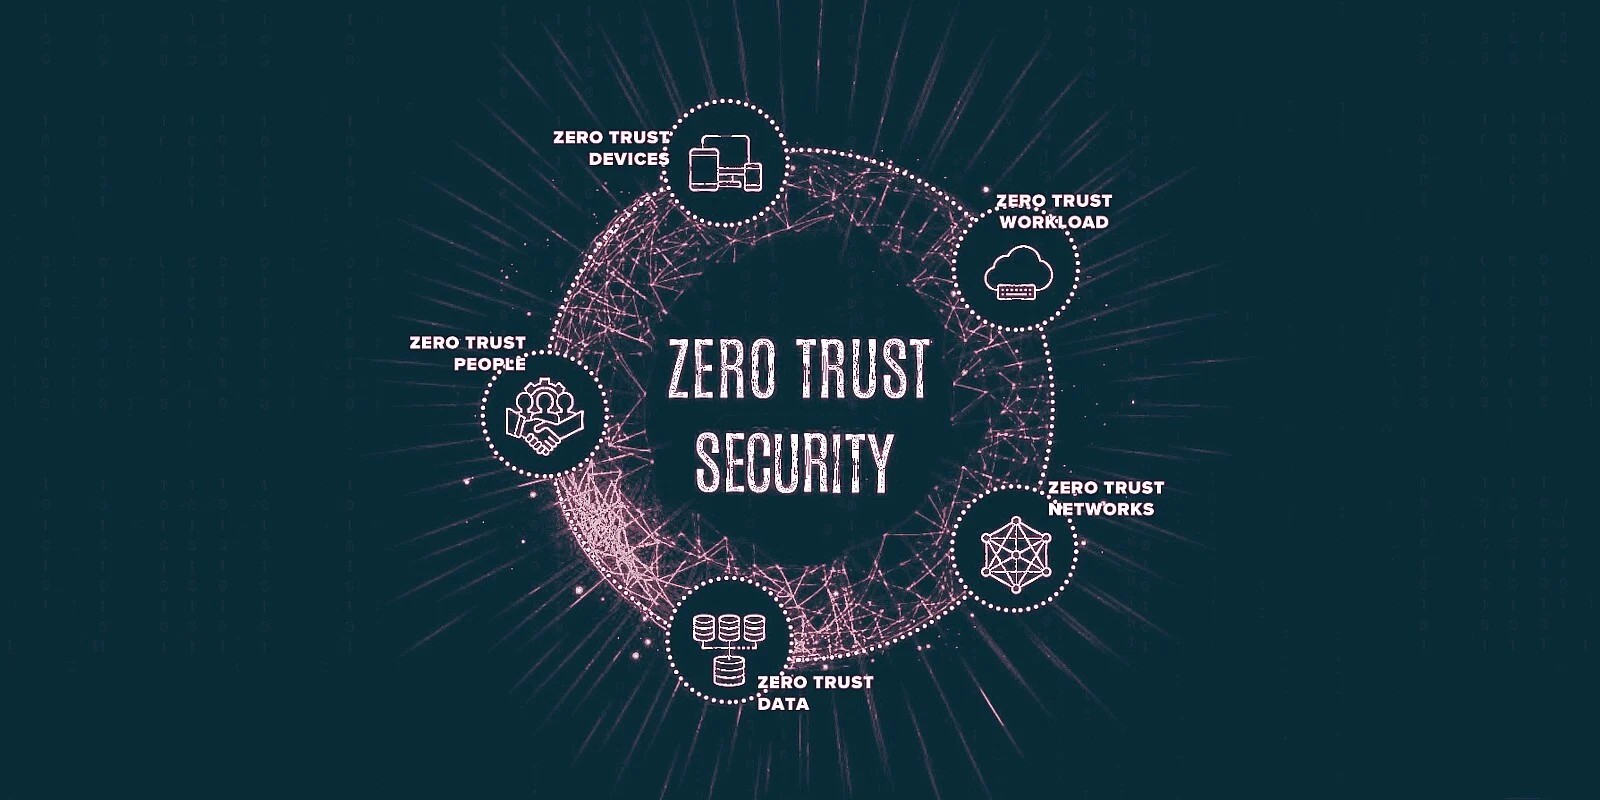 DPU – Bộ xử lý dữ liệu NVIDIA giải quyết bài toán bảo mật Zero Trust